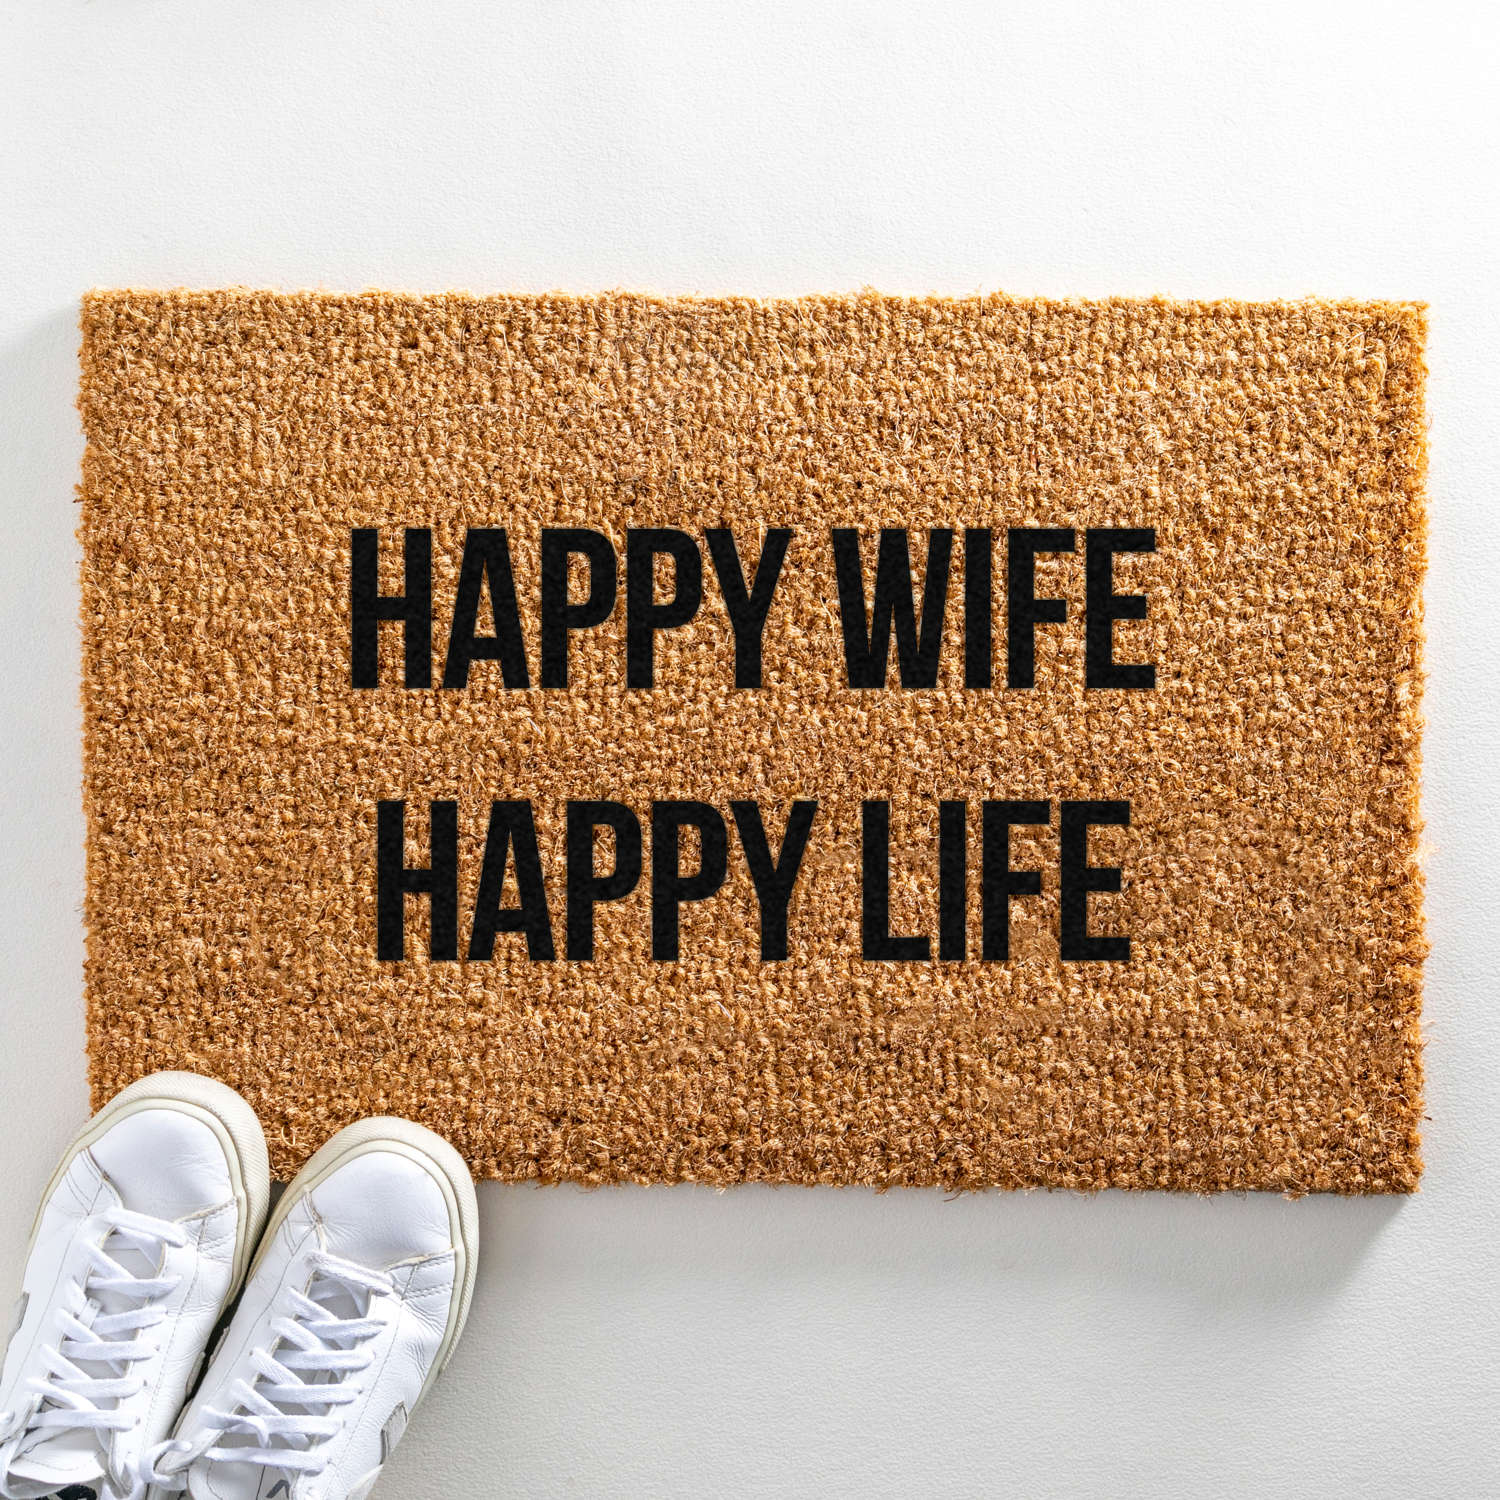 Happy wife happy life design standard size doormat